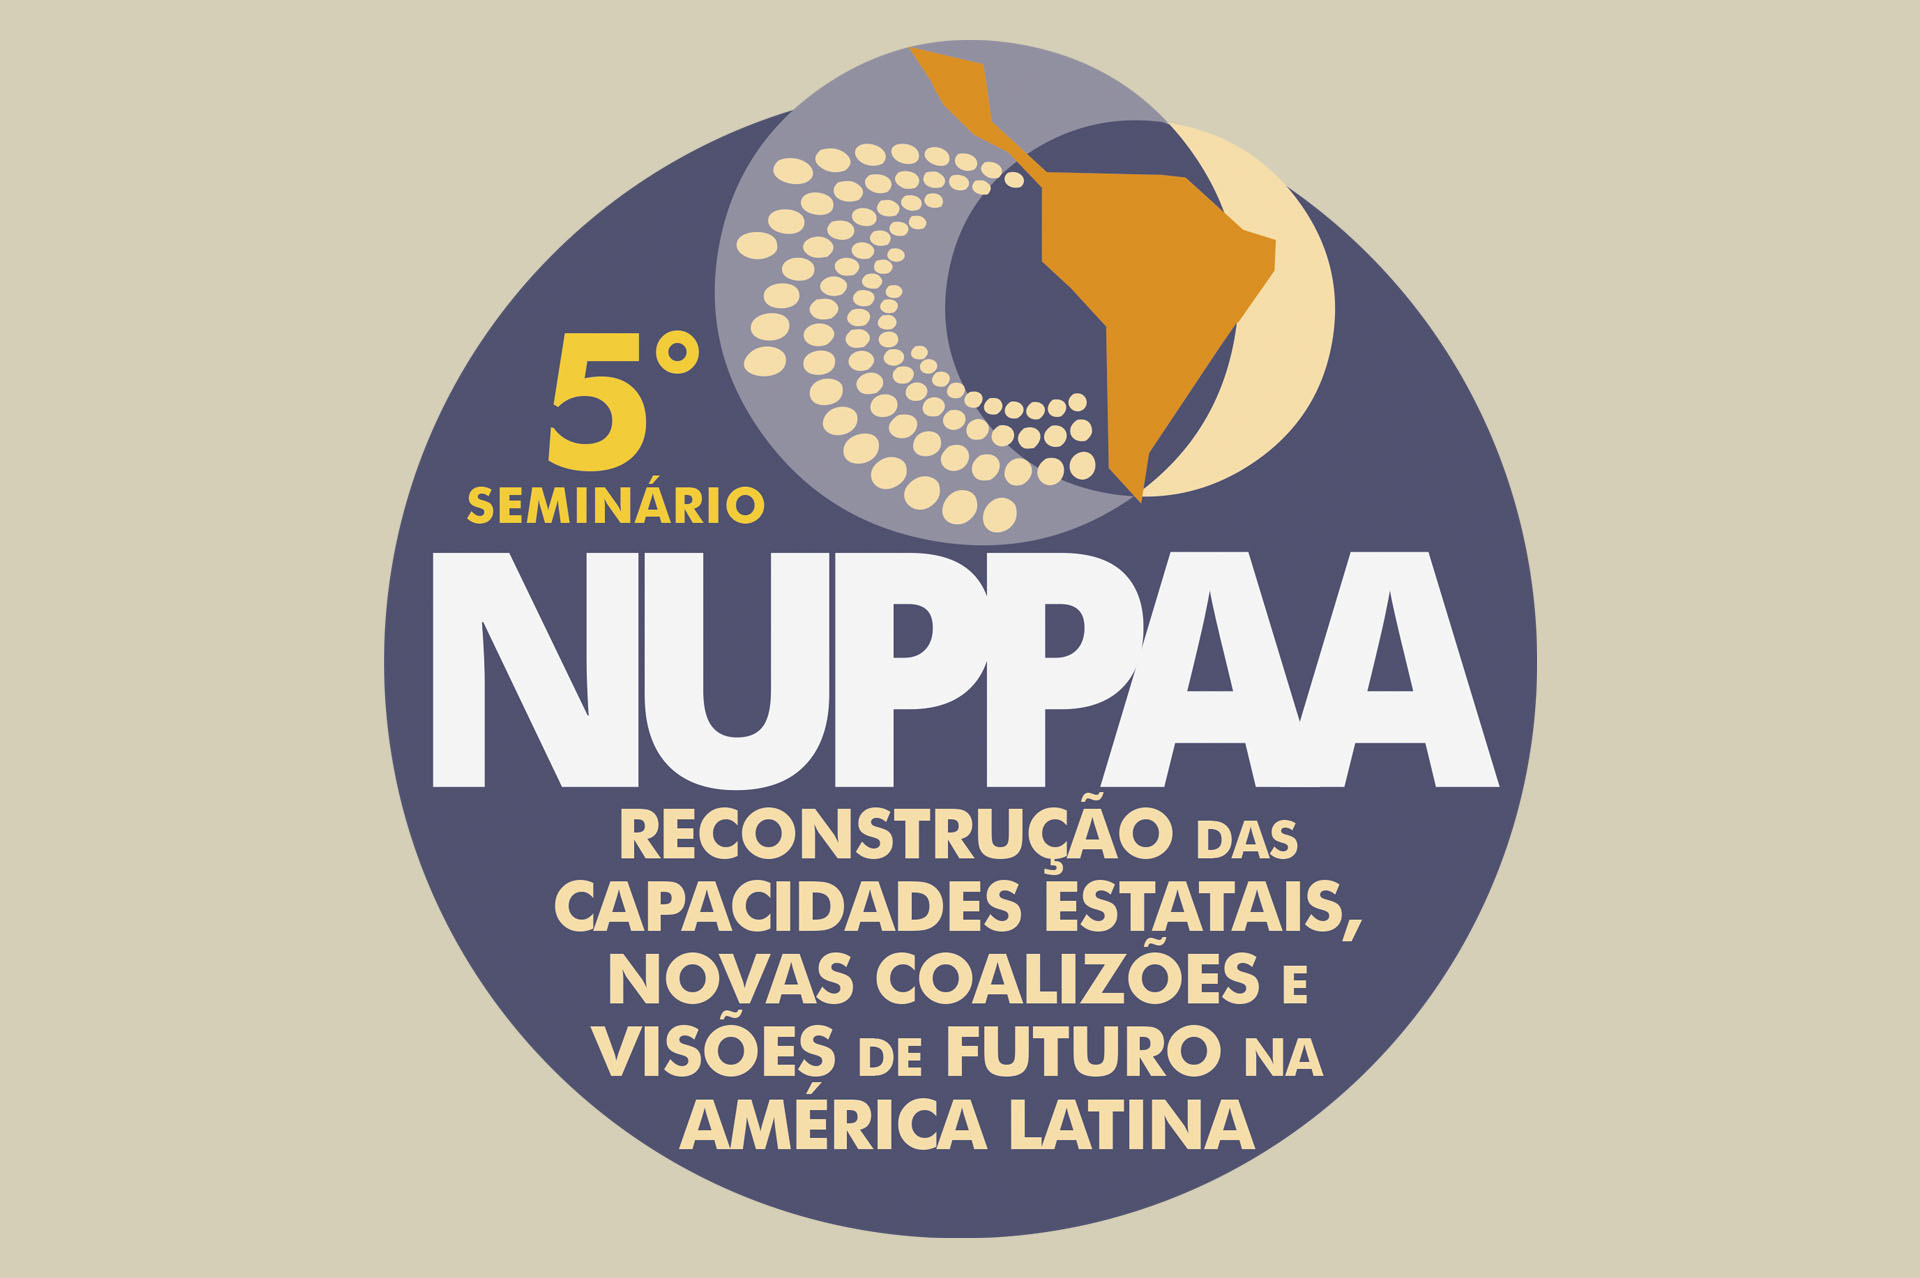 5° Seminário NUPPAA – Reconstrução das Capacidades Estatais, Novas Coalizões e Visões de Futuro na América Latina